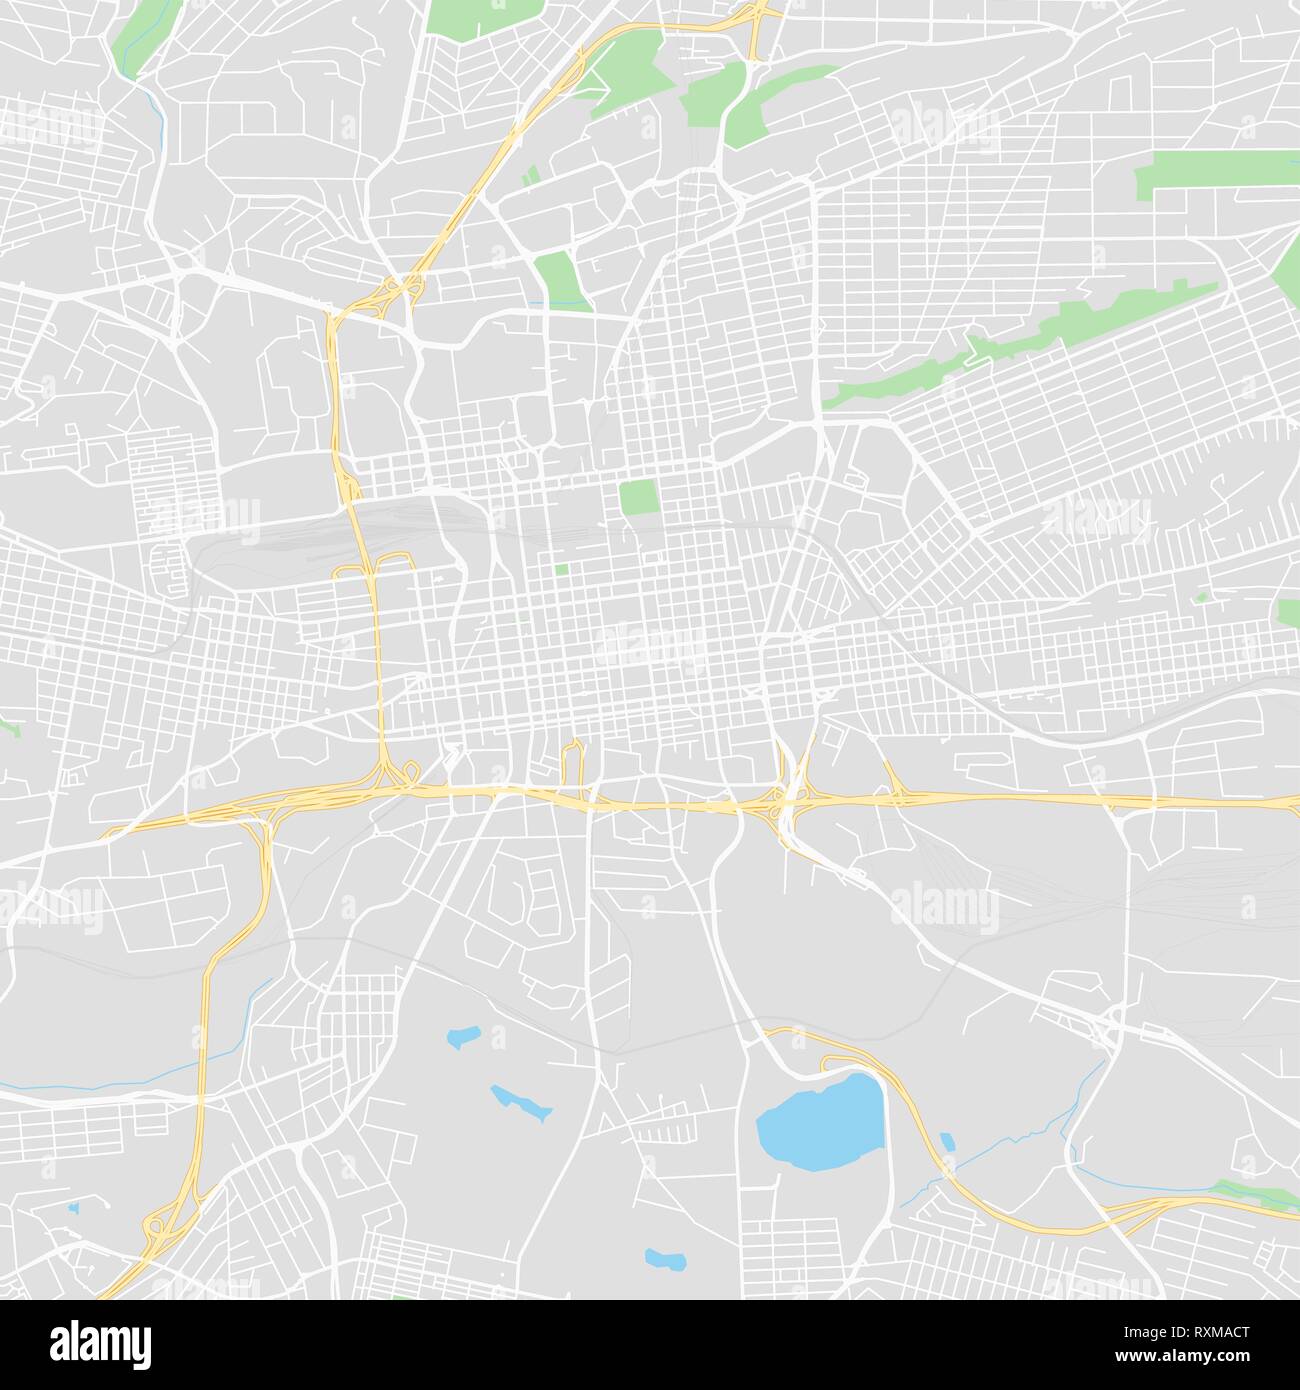 Downtown Vektorkarte von Johannesburg, Südafrika. Diese druckbare Karte von Johannesburg enthält Zeilen und klassischen farbigen Formen für die Landmasse, Parks, Stock Vektor